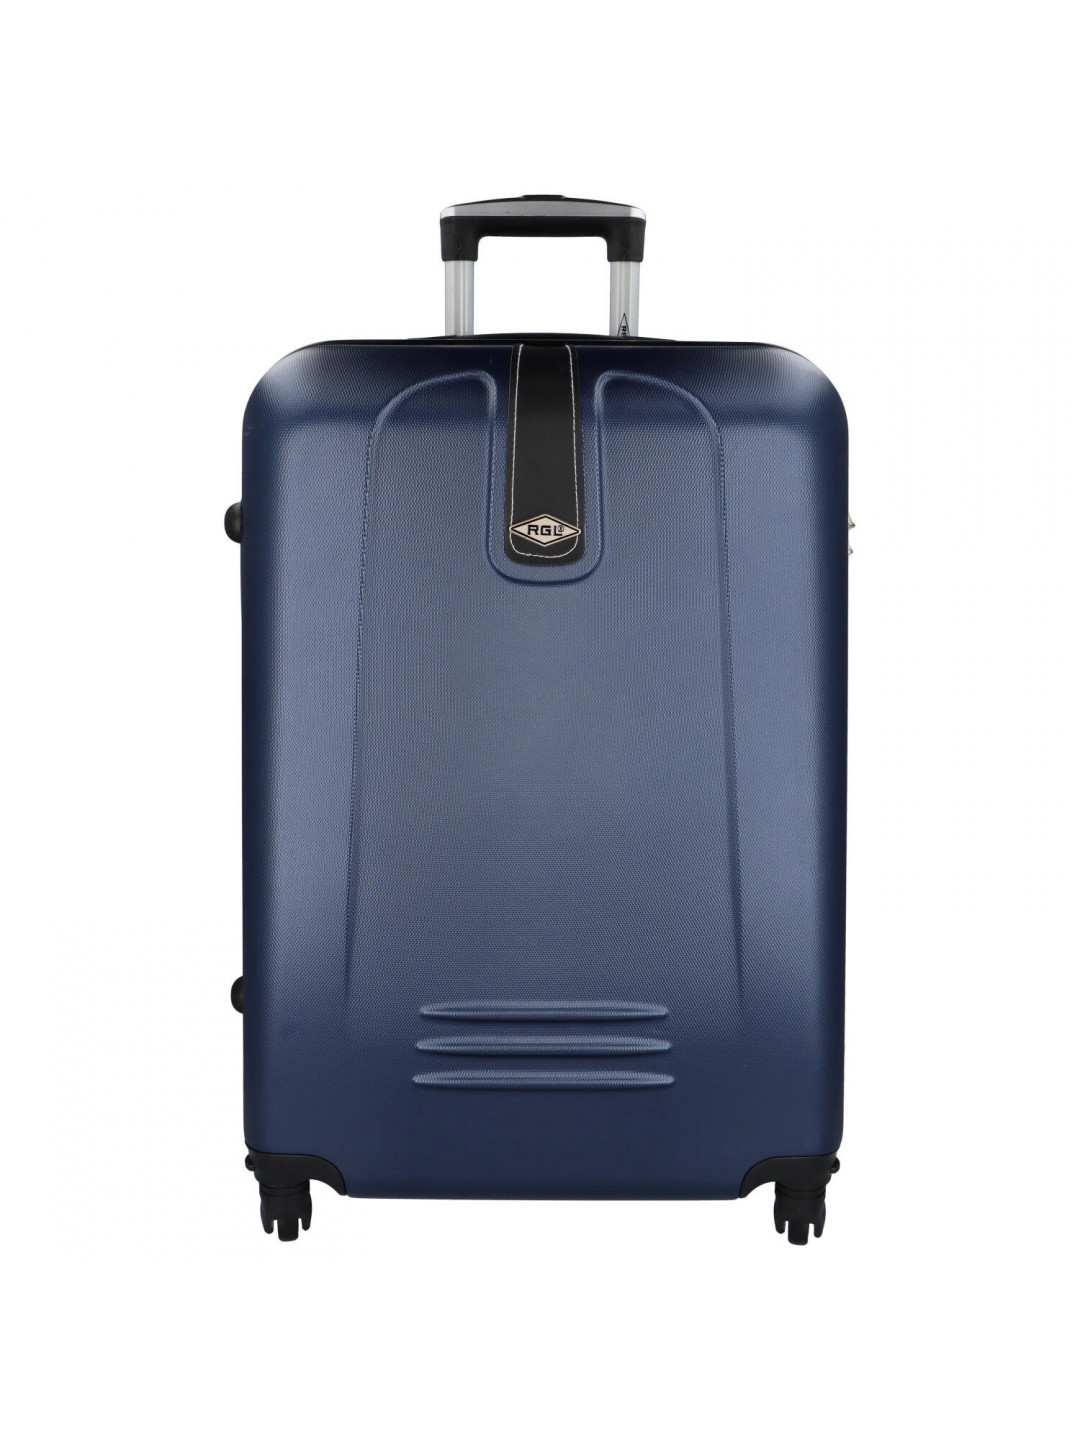 Plastový cestovní kufr Peek tmavě modrý L